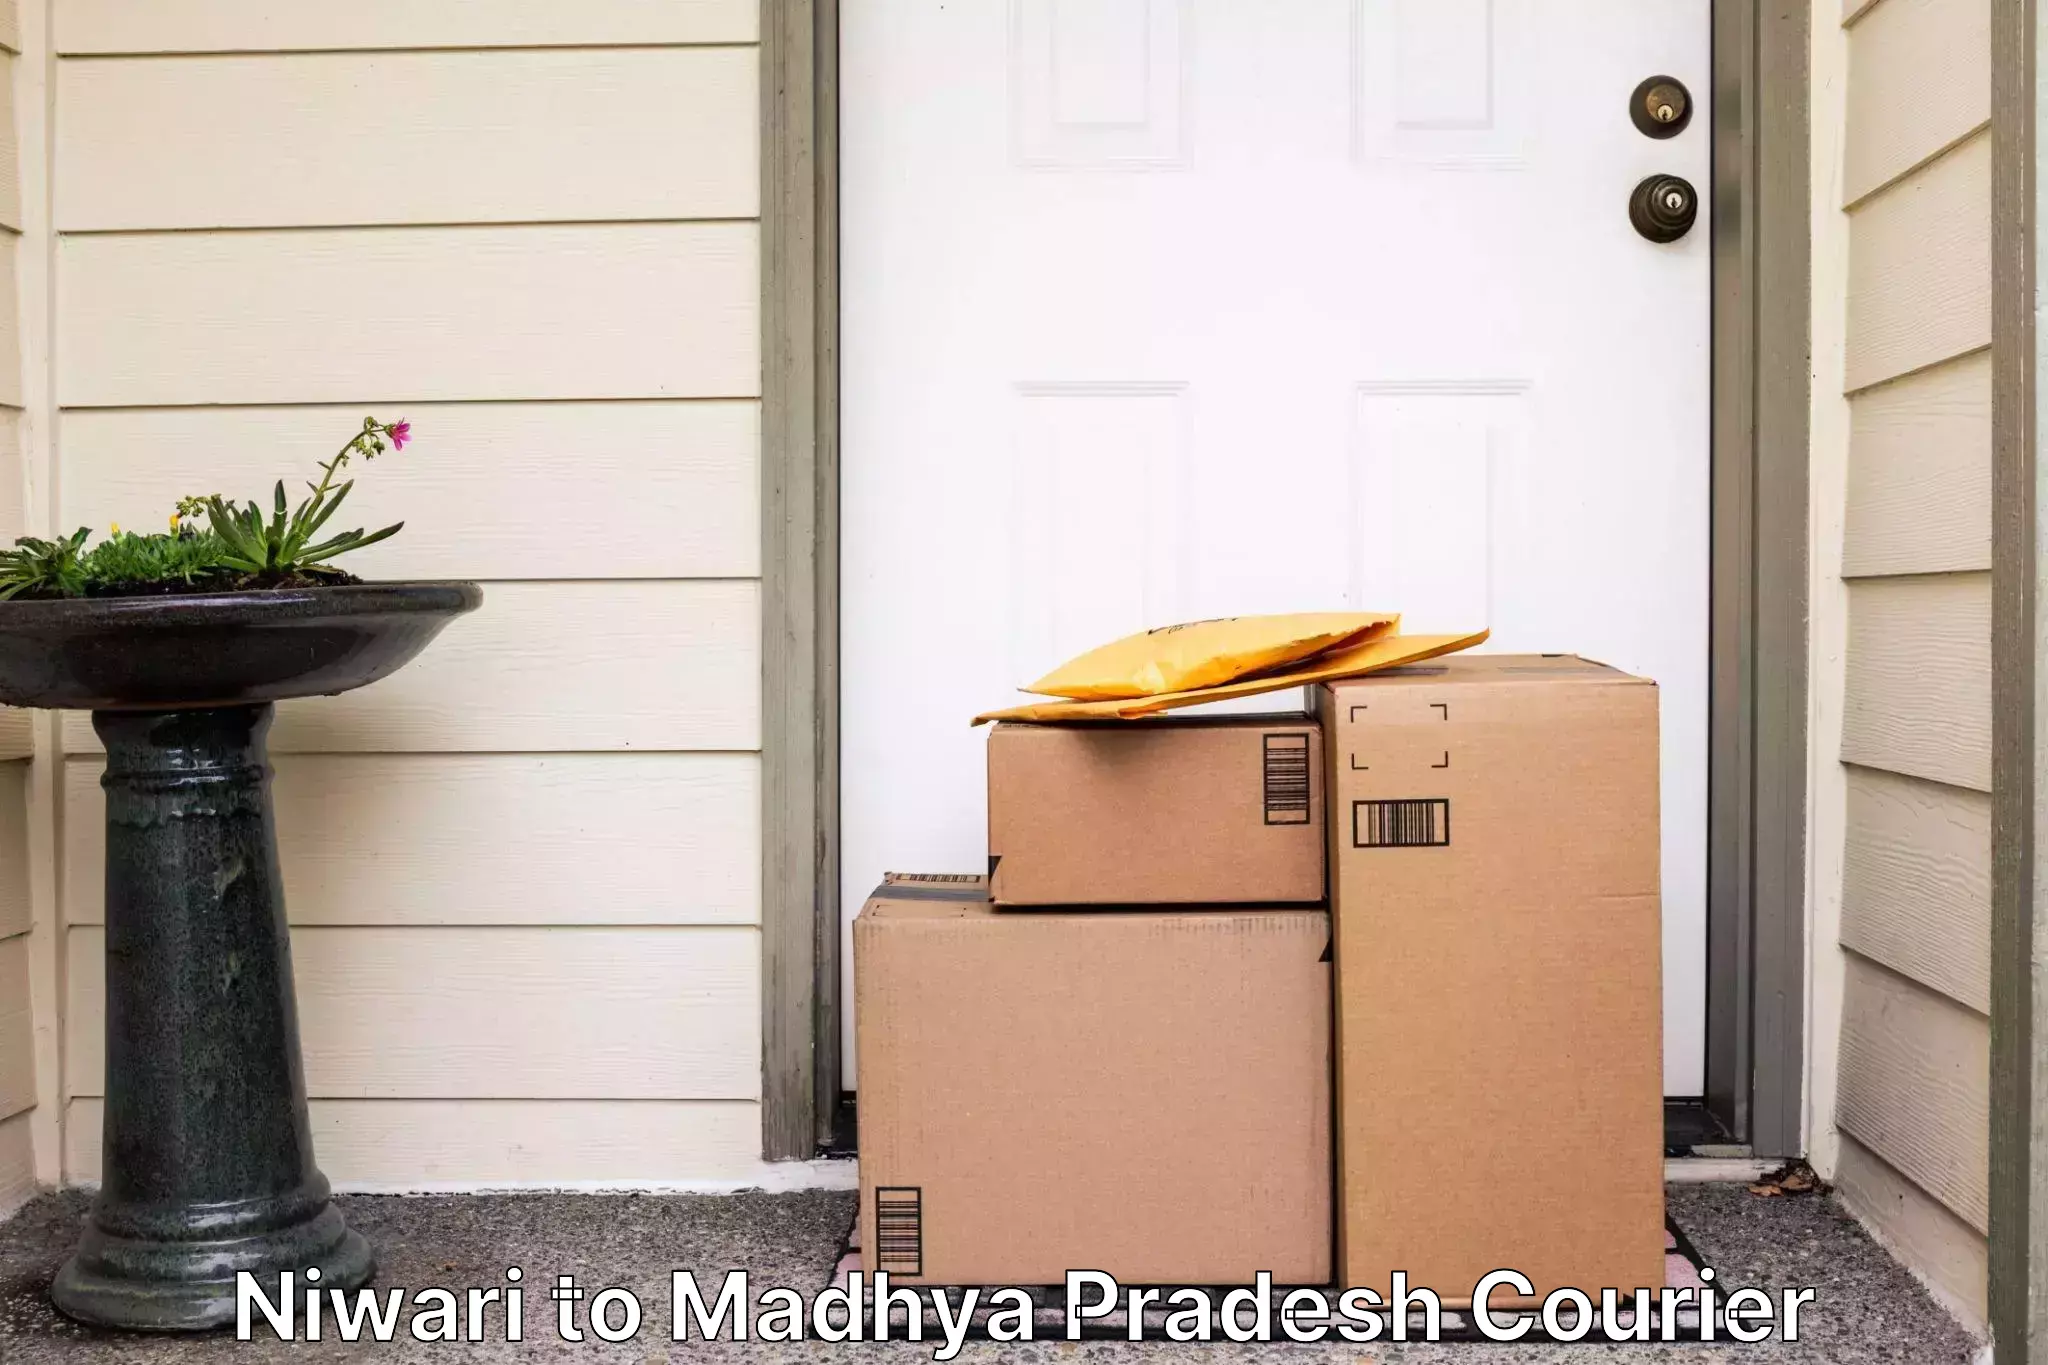 Large package courier Niwari to Madhya Pradesh